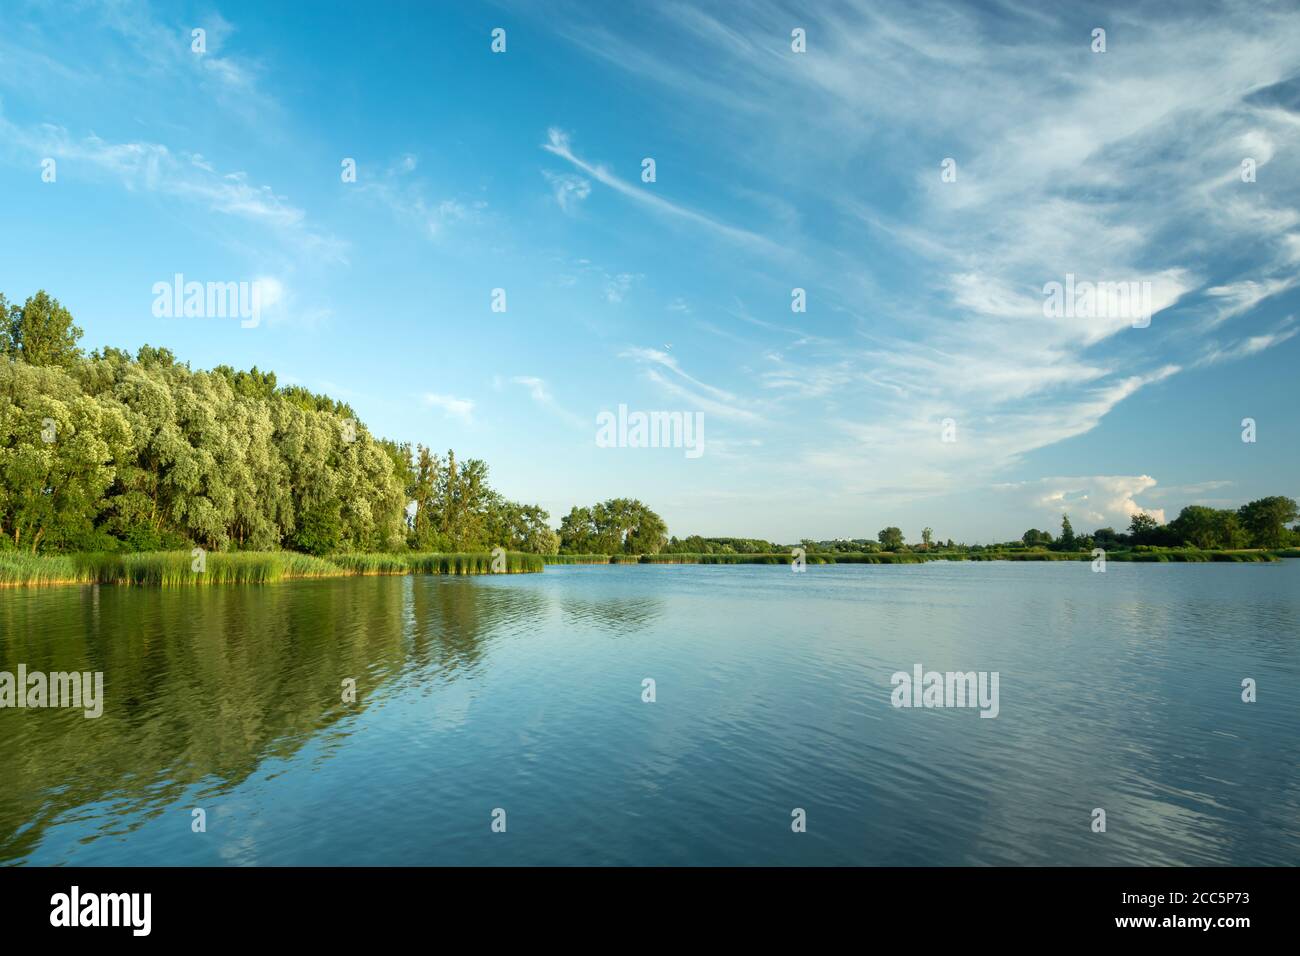 Les nuages de Cirrus dans le ciel bleu au-dessus d'un lac et d'une forêt verte, Stankow, Pologne Banque D'Images